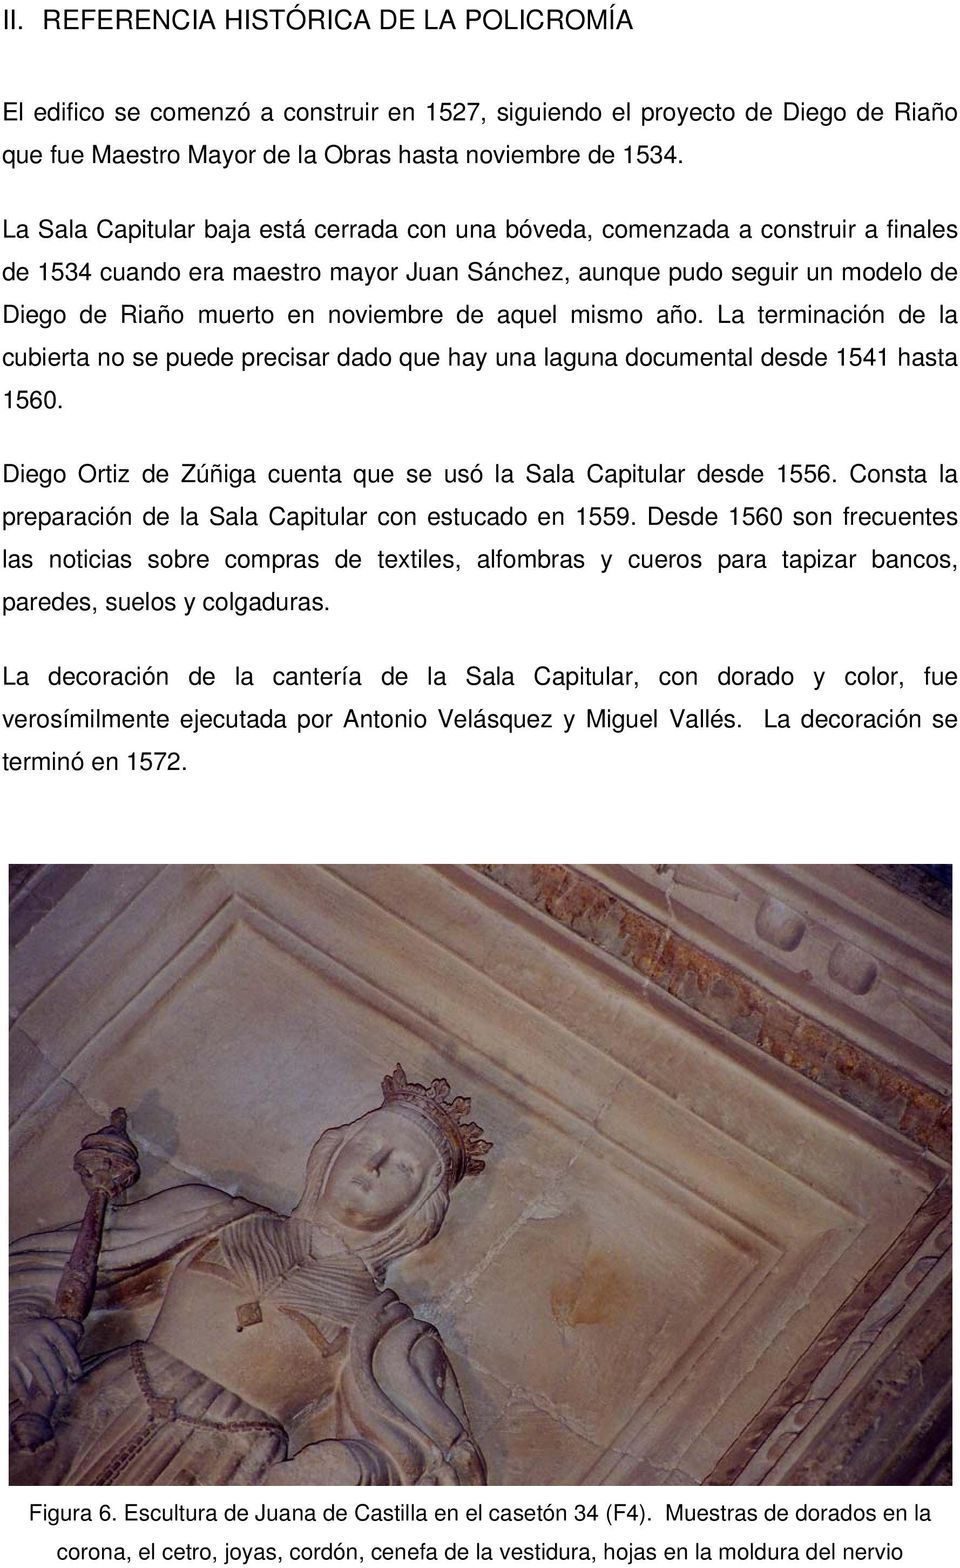 de aquel mismo año. La terminación de la cubierta no se puede precisar dado que hay una laguna documental desde 1541 hasta 1560. Diego Ortiz de Zúñiga cuenta que se usó la Sala Capitular desde 1556.